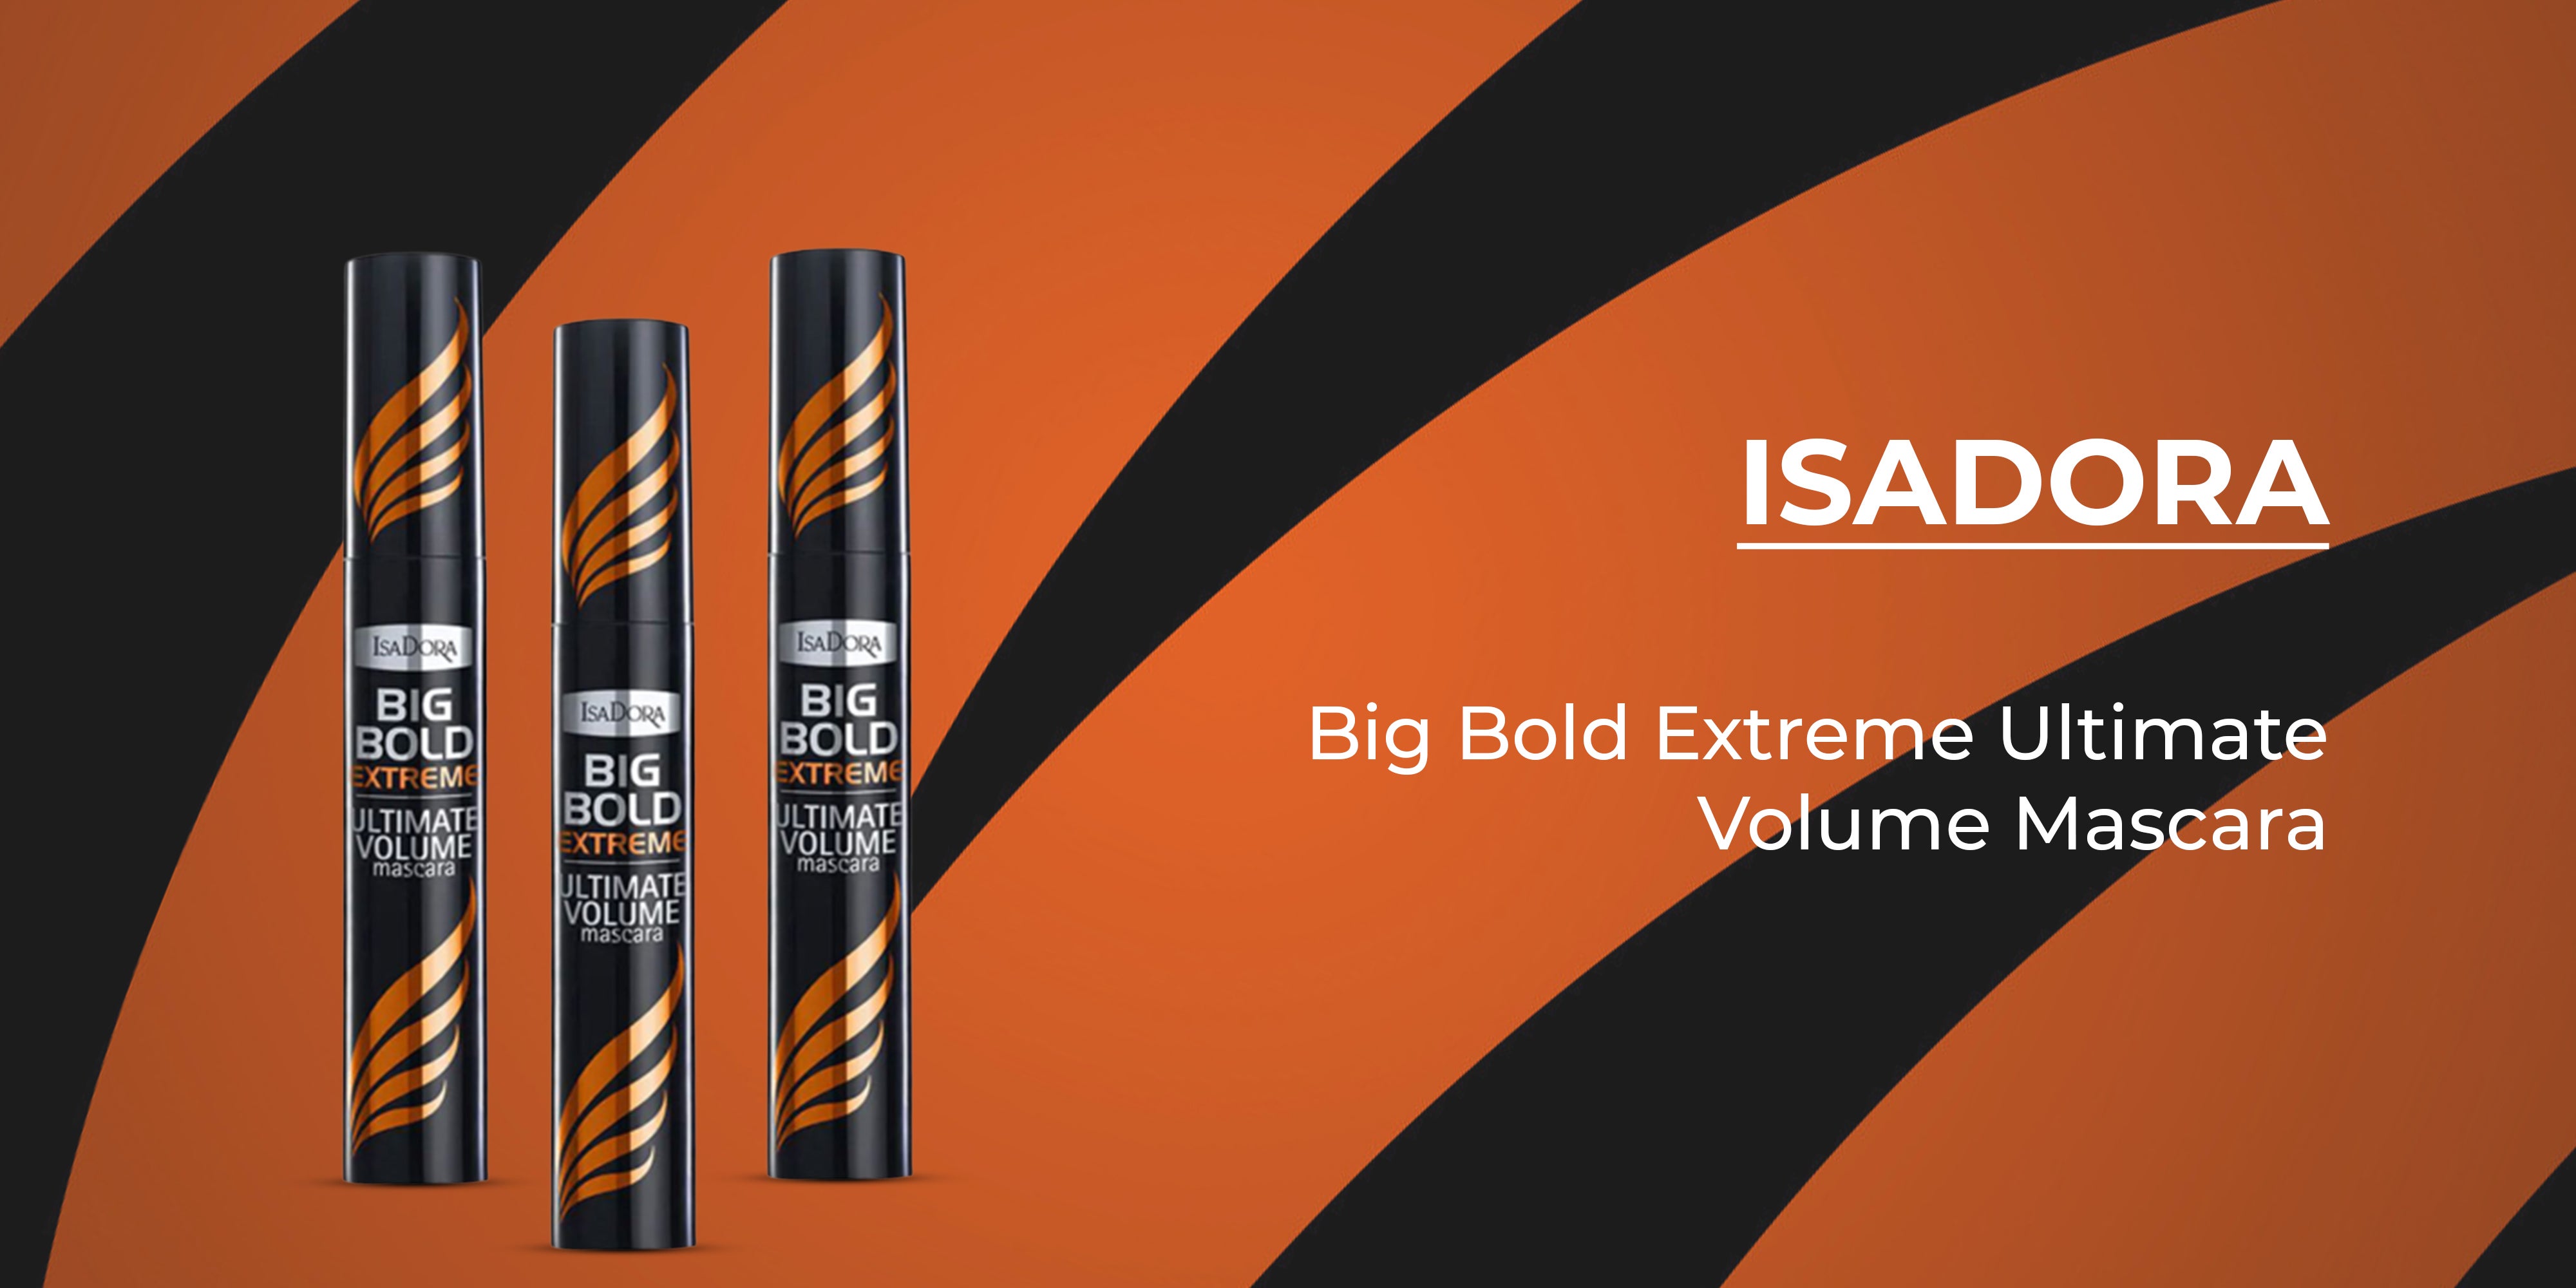 Big Bold Extreme Ultimate Volume Mascara Extreme Black